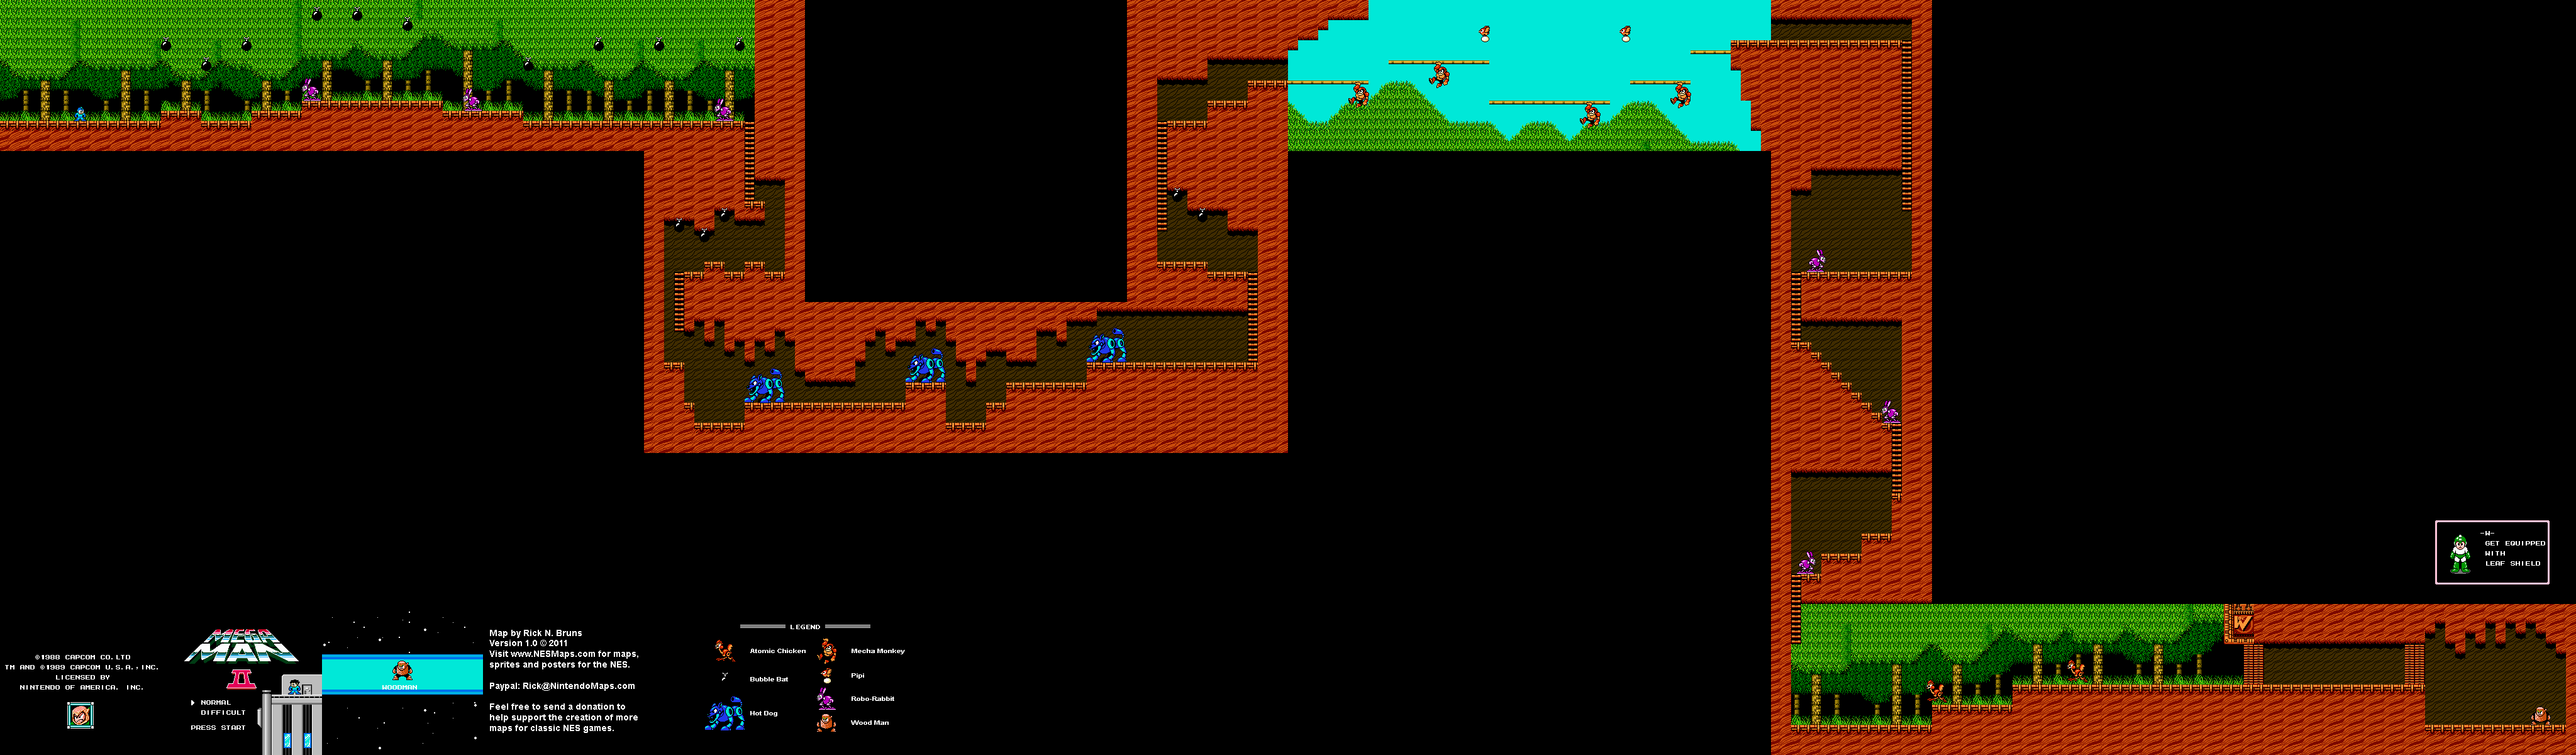 Mega Man II 2 - Wood Man Stage Nintendo NES Map